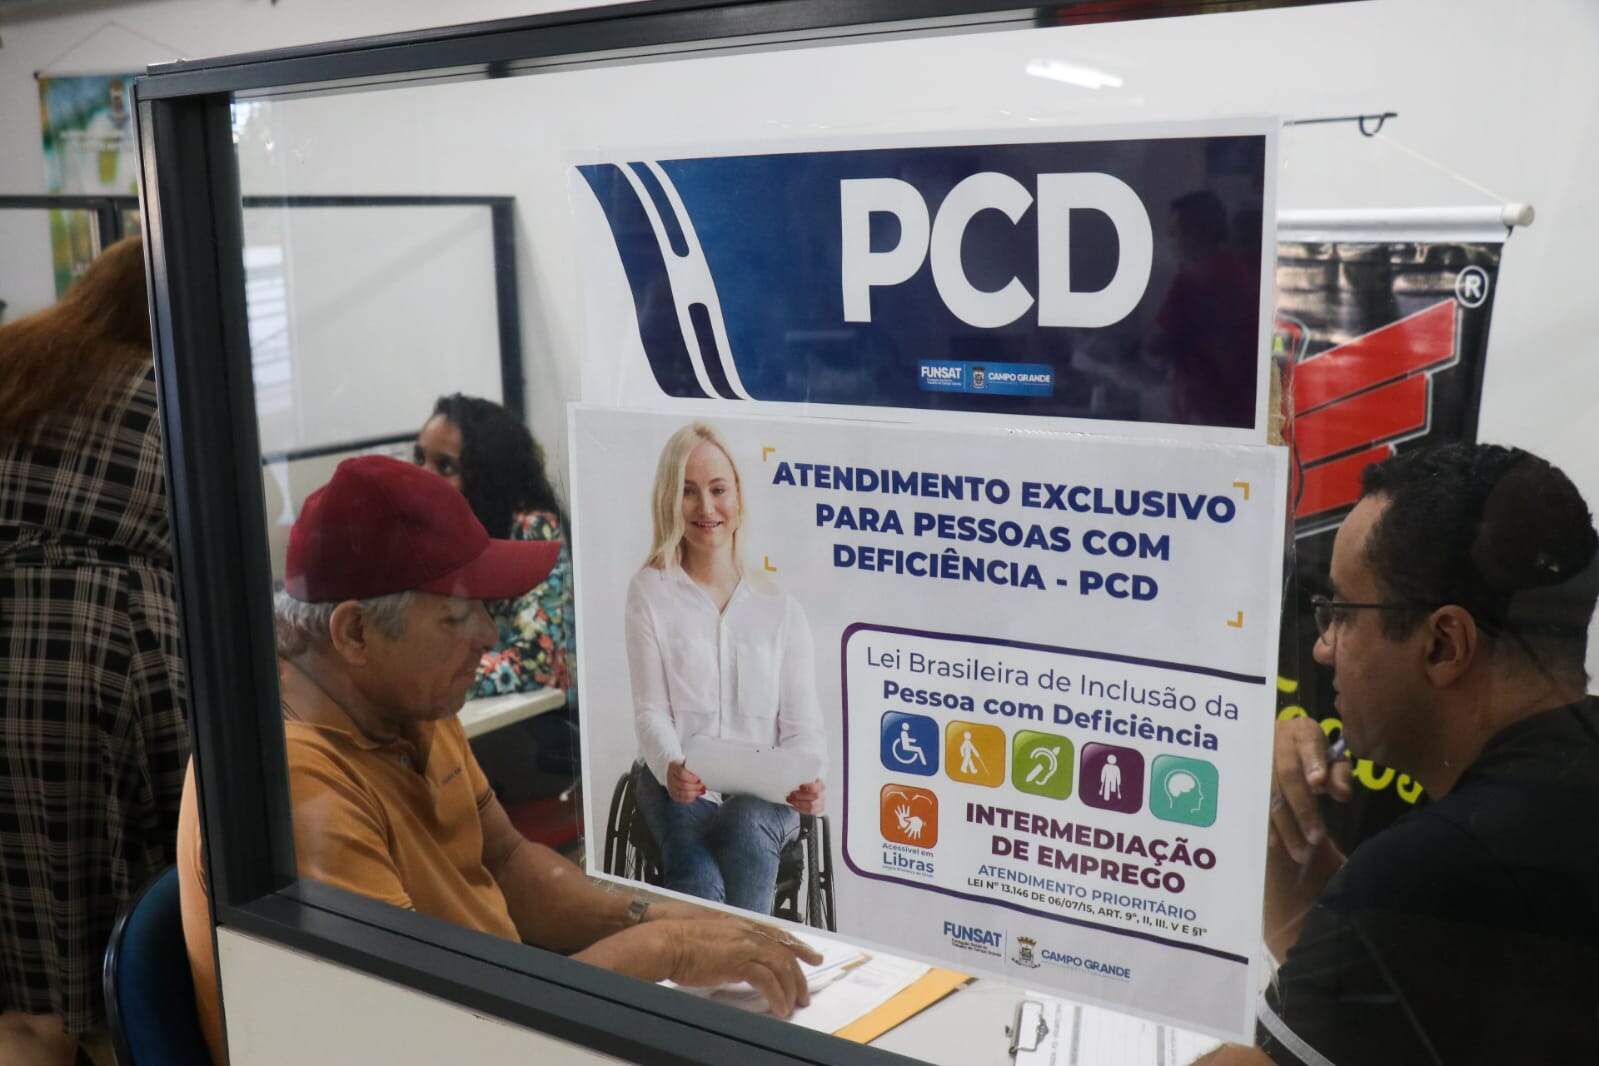 Atrás de segundo emprego, pessoas com deficiência vão a mutirão em Campo Grande